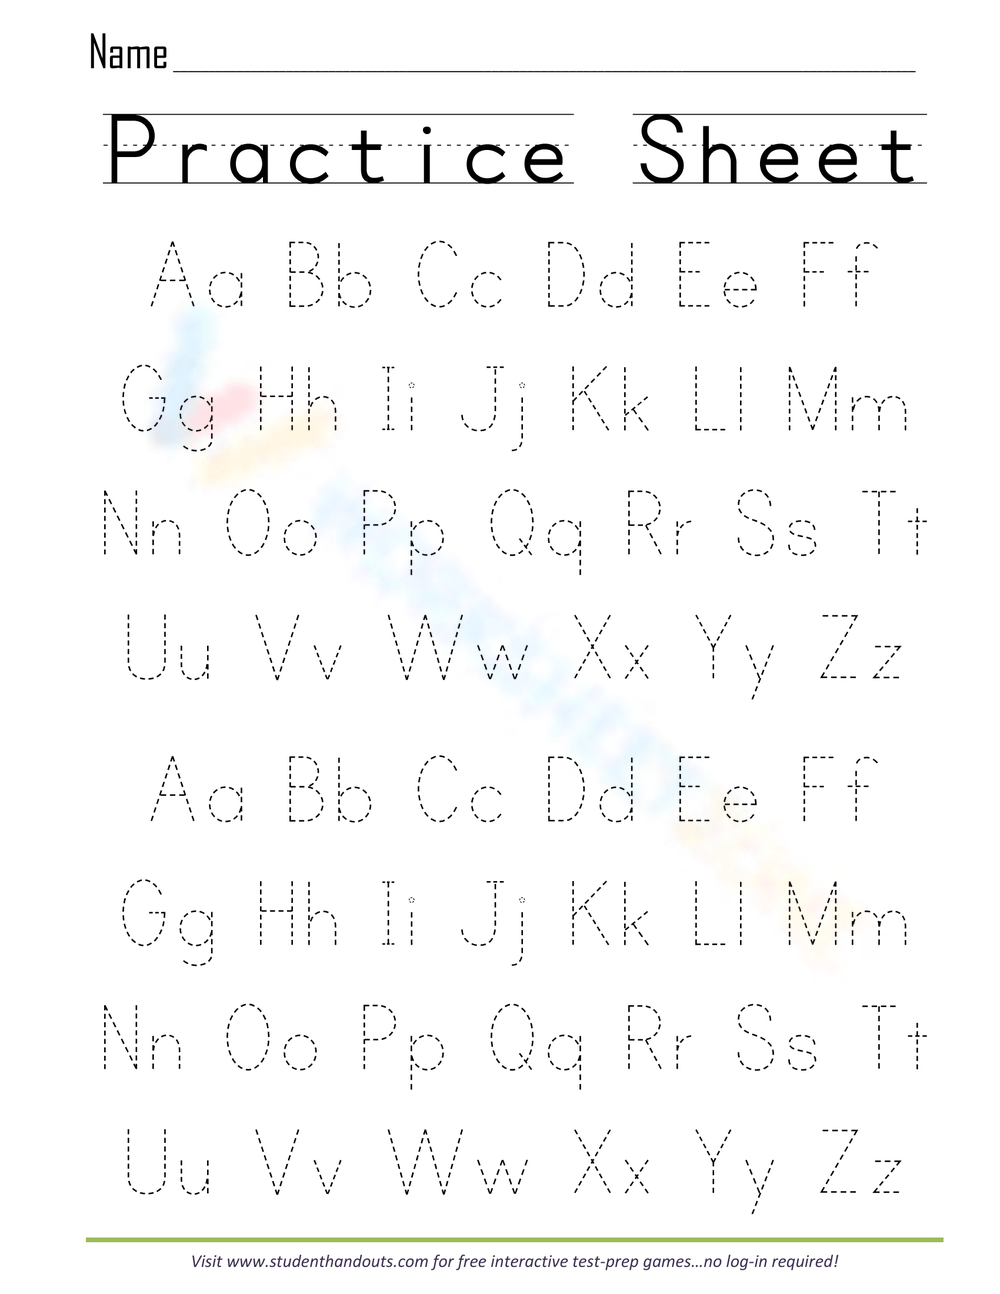 practice-sheet-worksheet